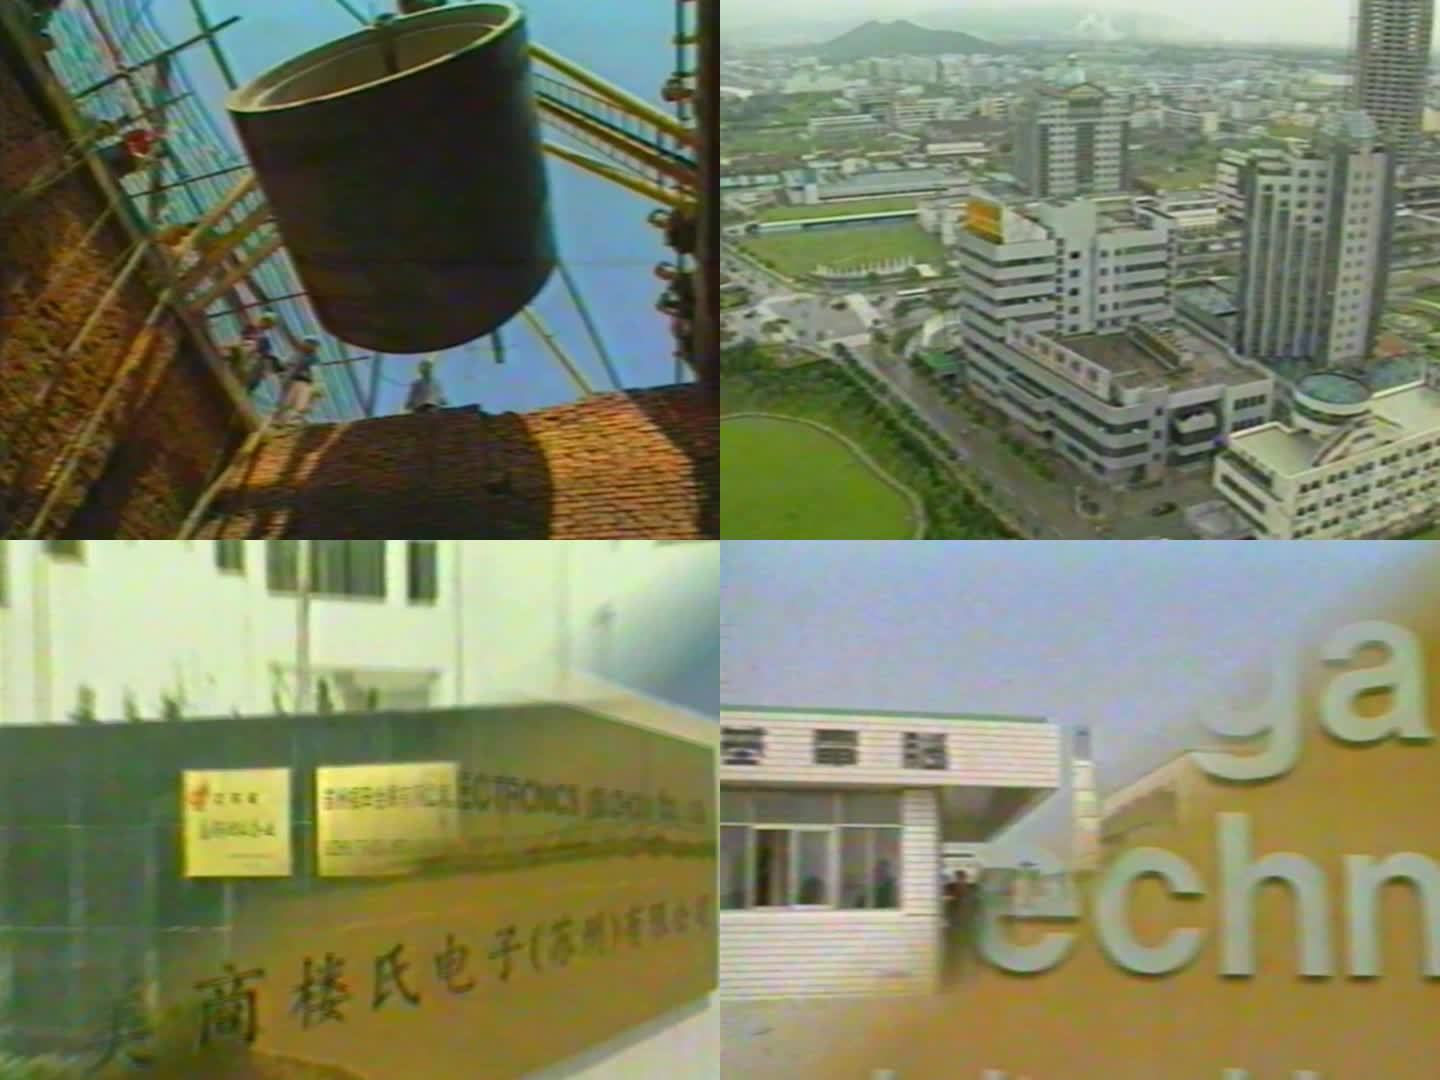 九十年代 苏州新加坡工业园 苏州新区奠基